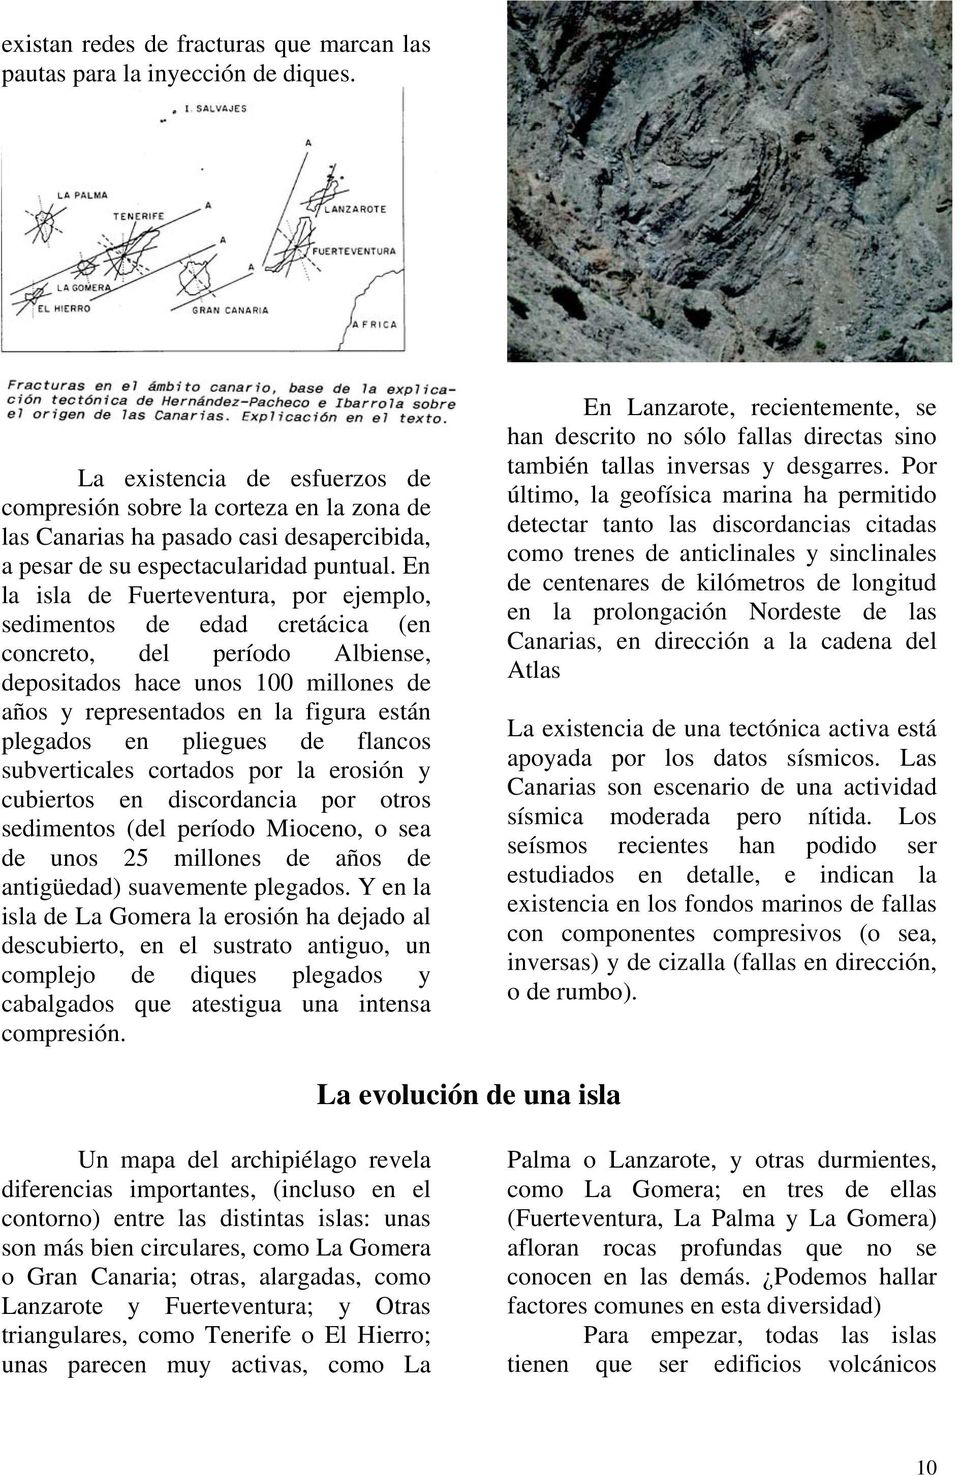 En la isla de Fuerteventura, por ejemplo, sedimentos de edad cretácica (en concreto, del período Albiense, depositados hace unos 100 millones de años y representados en la figura están plegados en